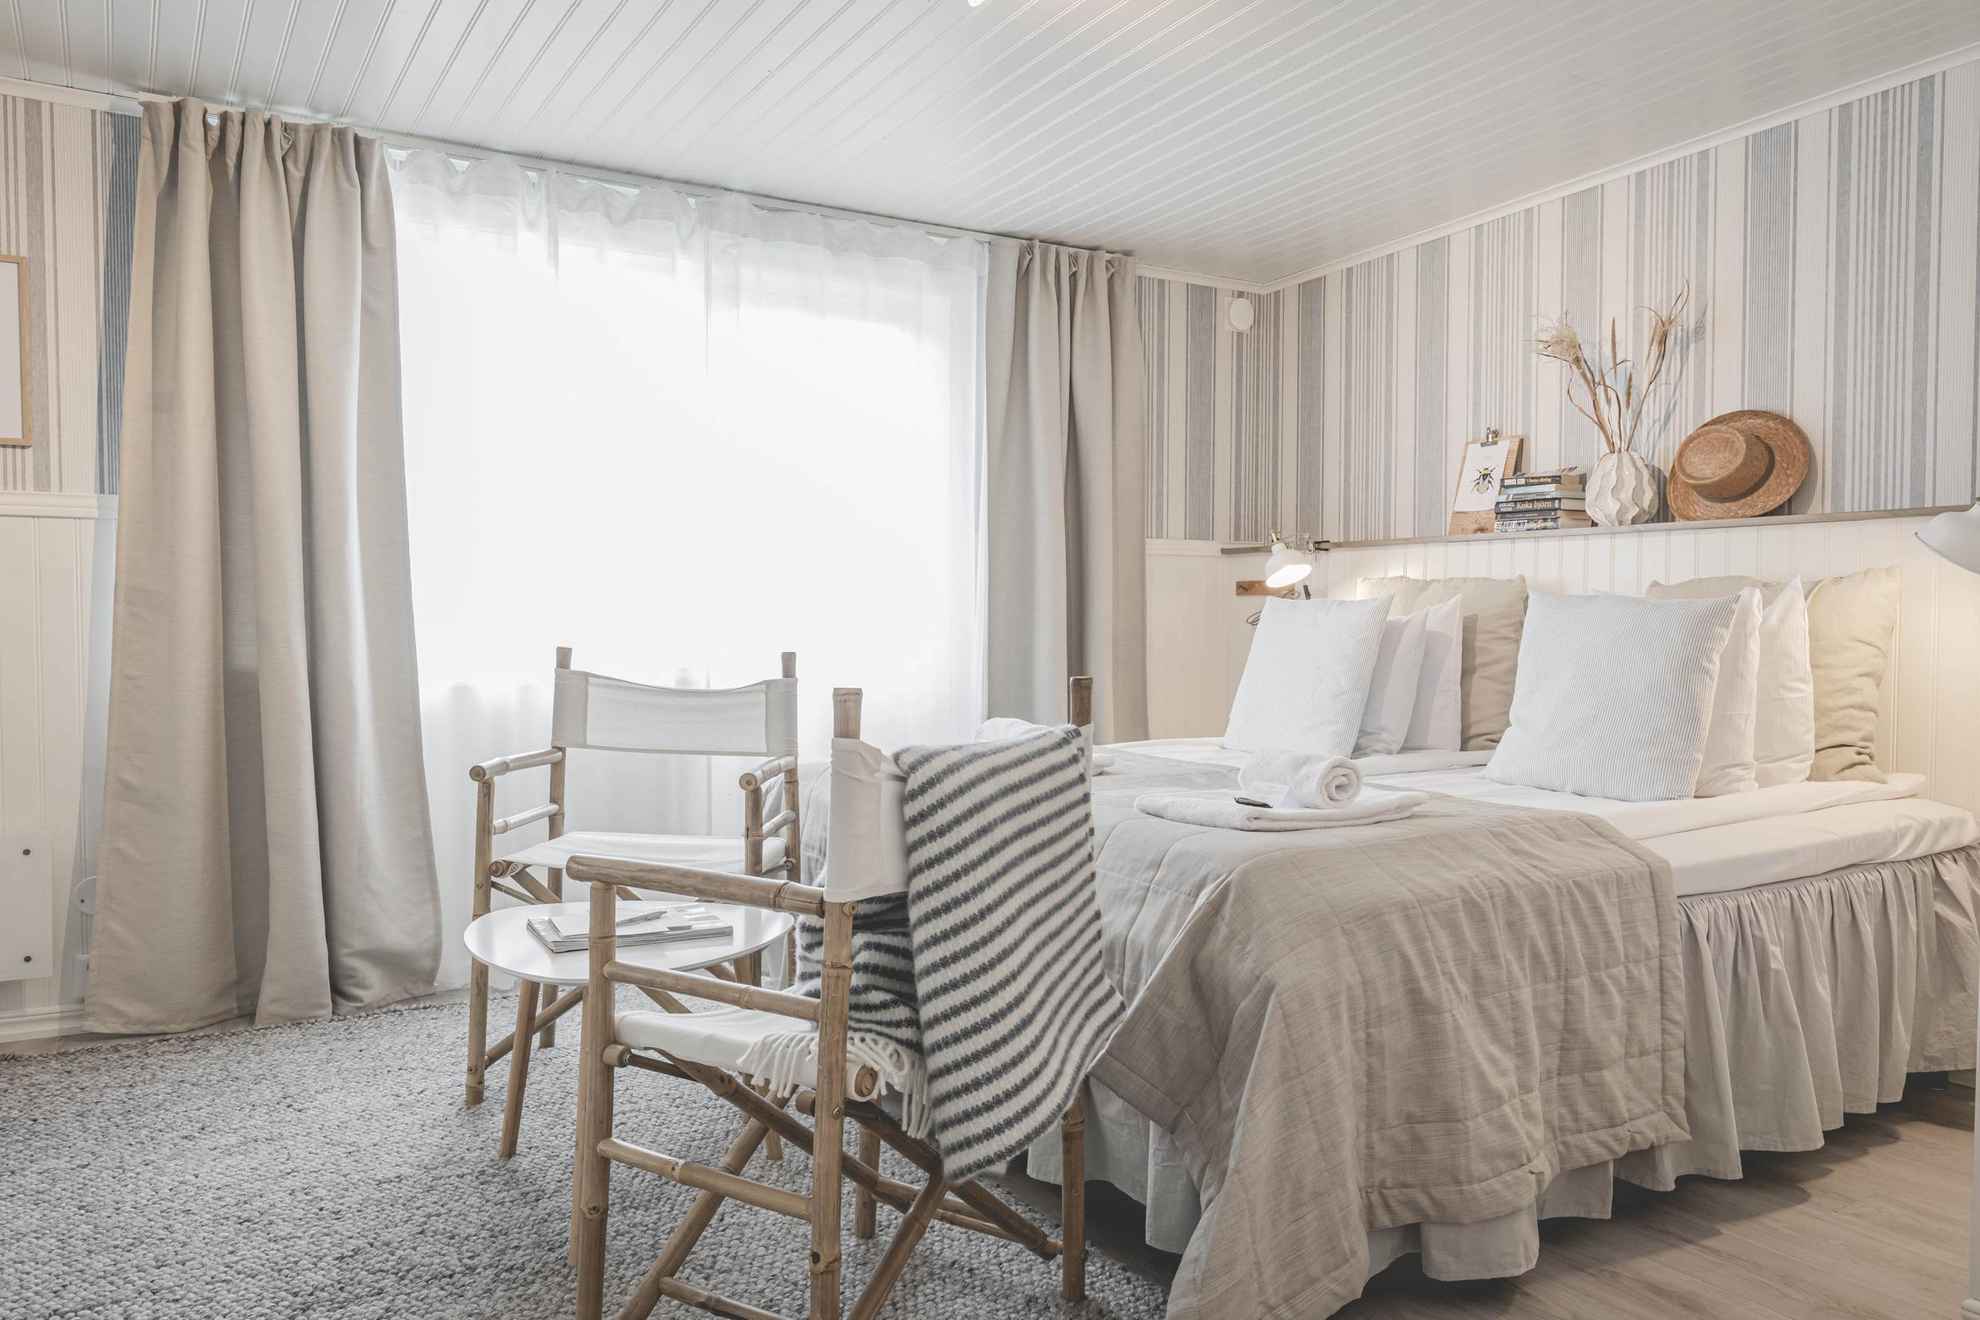 Ein Hotelzimmer in StrandNära. Das Zimmer hat ein großes Bett, einen kleinen Tisch und zwei Stühle. Das Zimmer ist in Weiß und Beige gehalten.